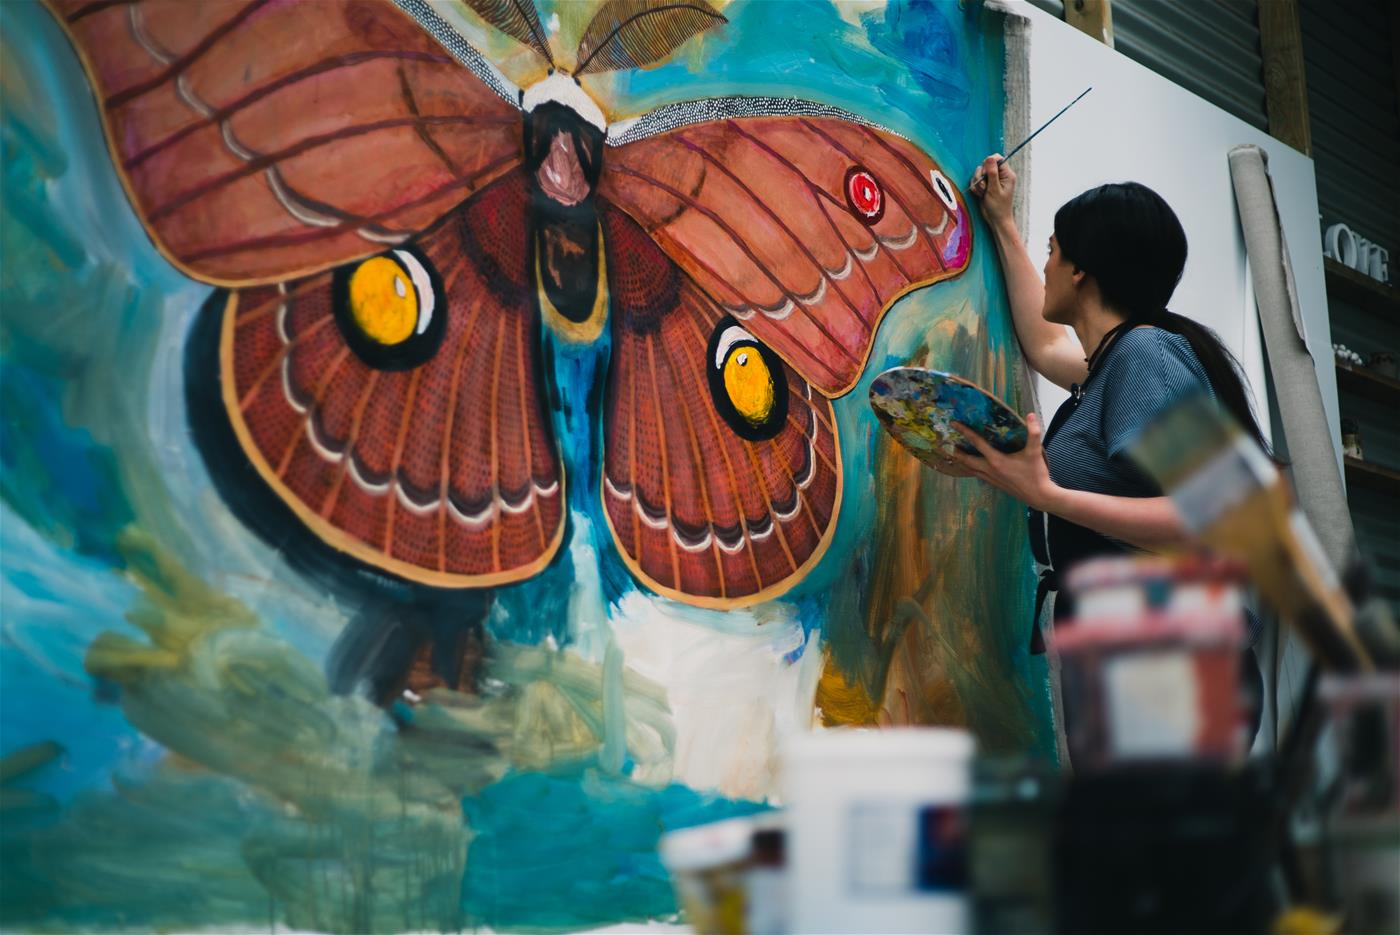 奥尔巴尼艺术家和创意网格学员切尔西霍普金斯艾伦画一个比生命更大的海伦娜口香糖蛾。